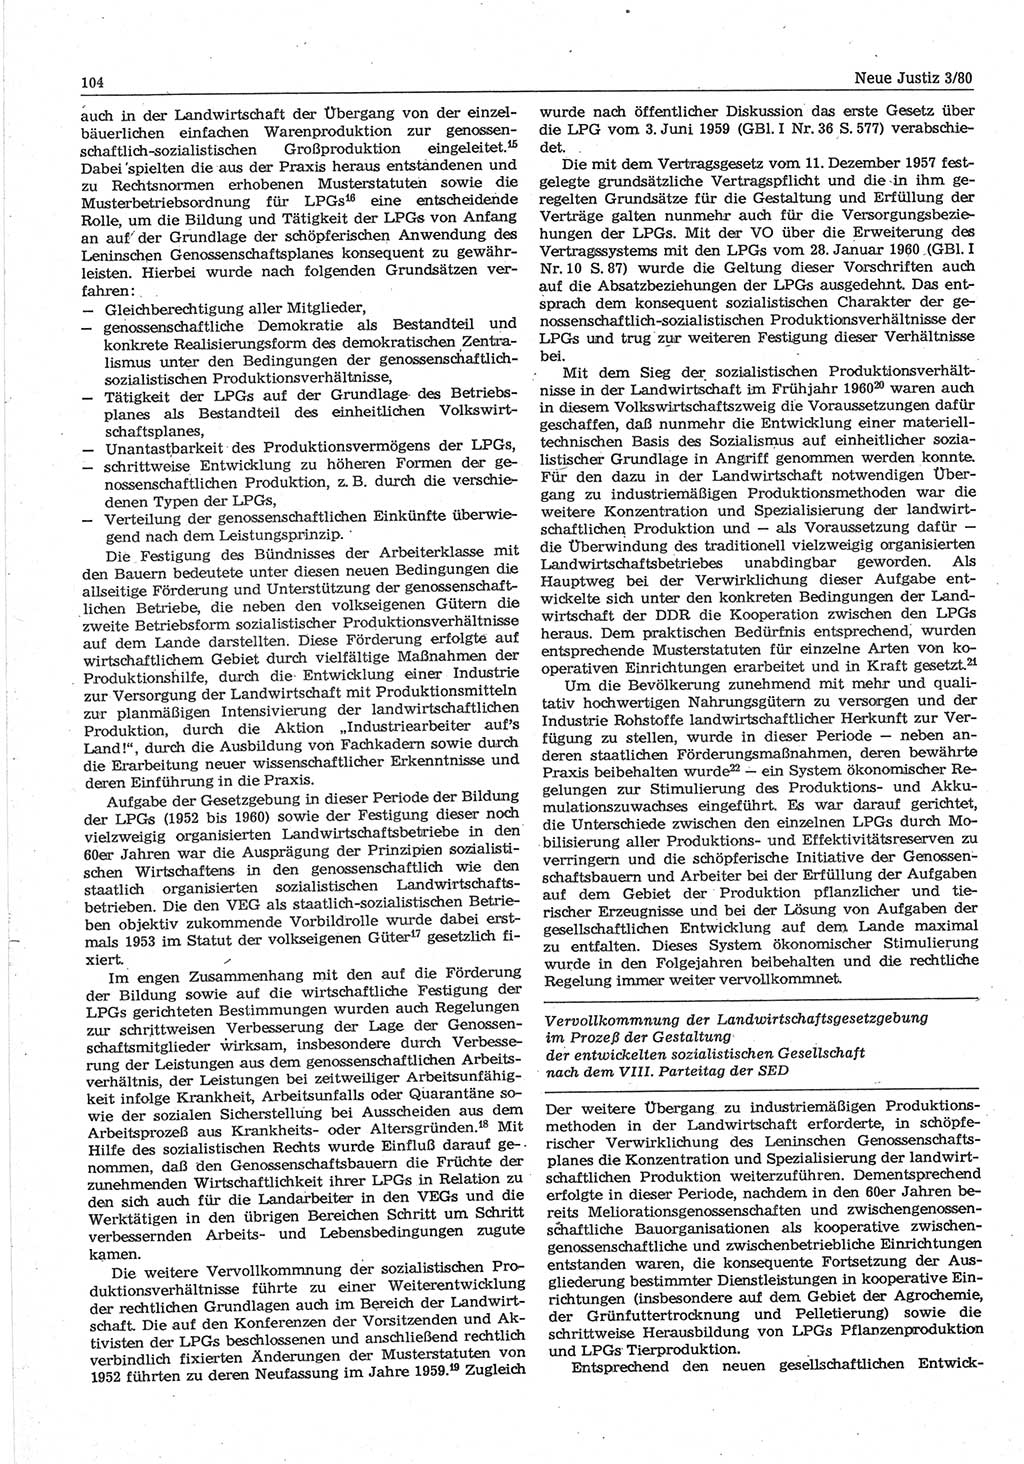 Neue Justiz (NJ), Zeitschrift für sozialistisches Recht und Gesetzlichkeit [Deutsche Demokratische Republik (DDR)], 34. Jahrgang 1980, Seite 104 (NJ DDR 1980, S. 104)